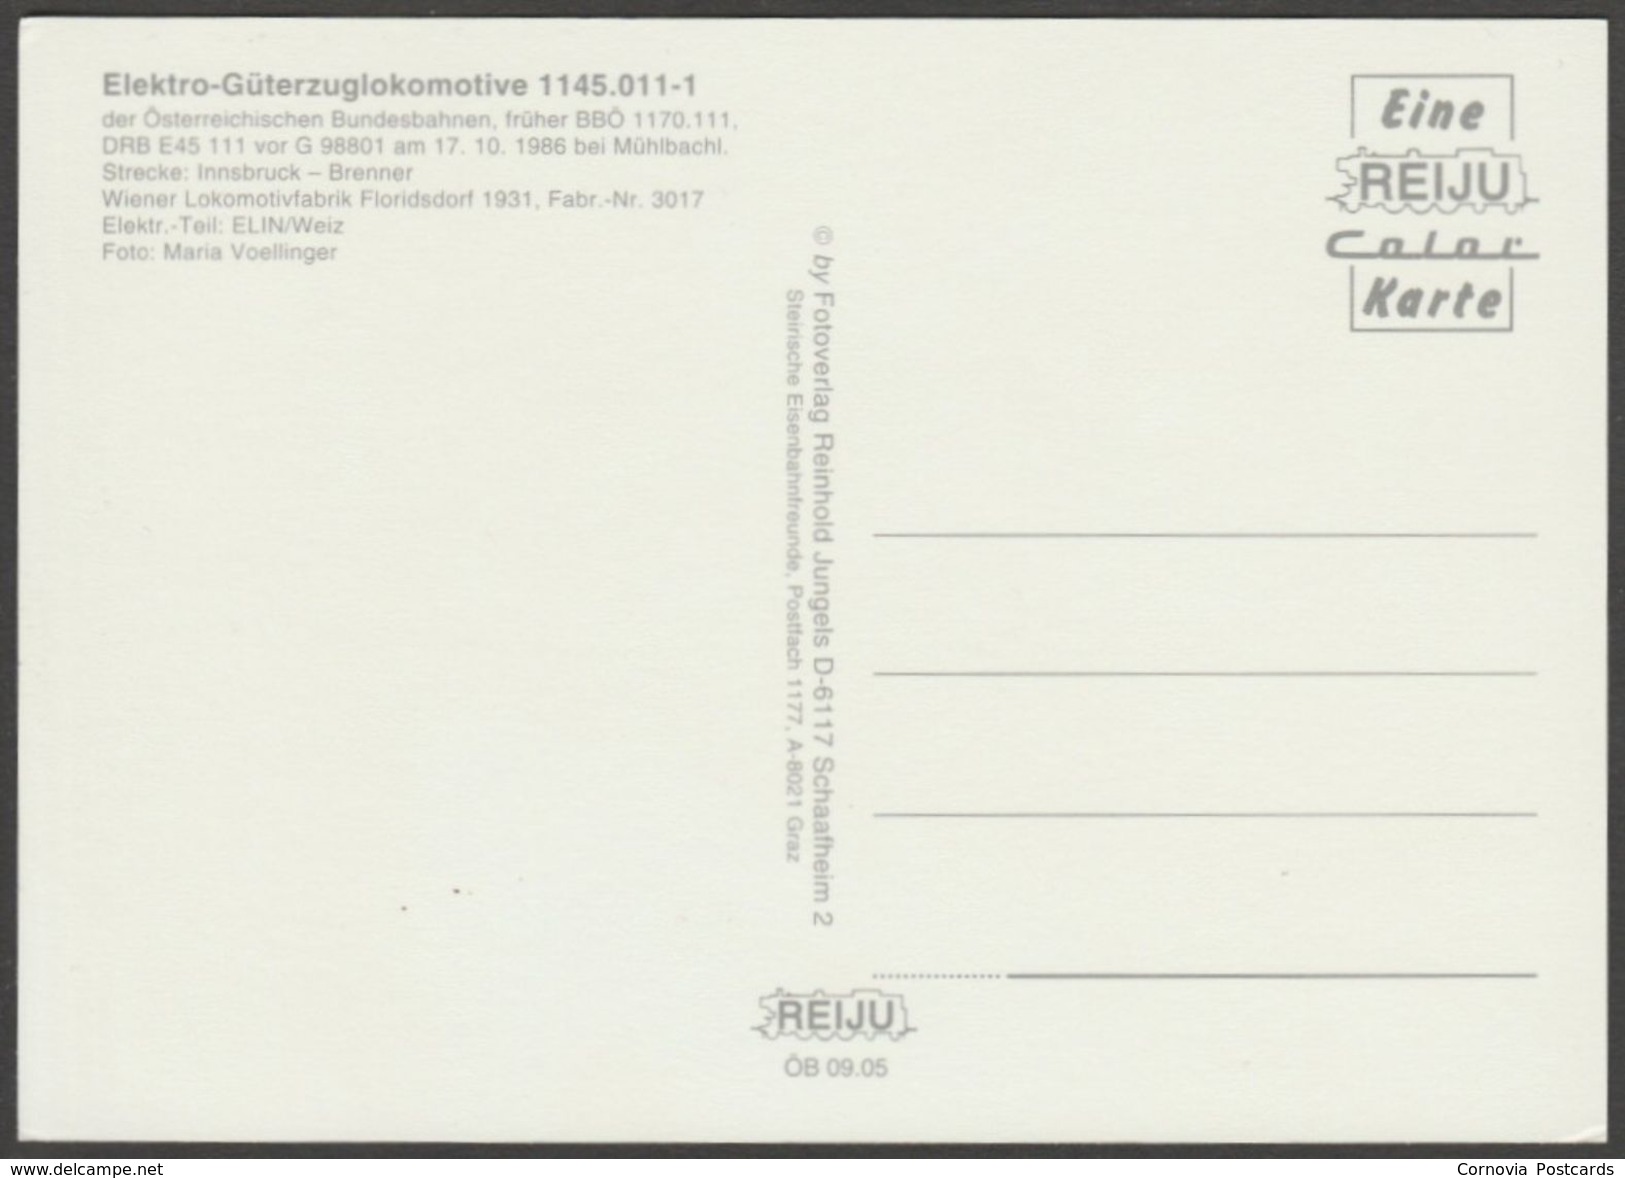 Österreichischen Bundesbahnnen Elektro-Güterzuglokomotive 1145.011-1 - Reiju Postcard AK - Trains